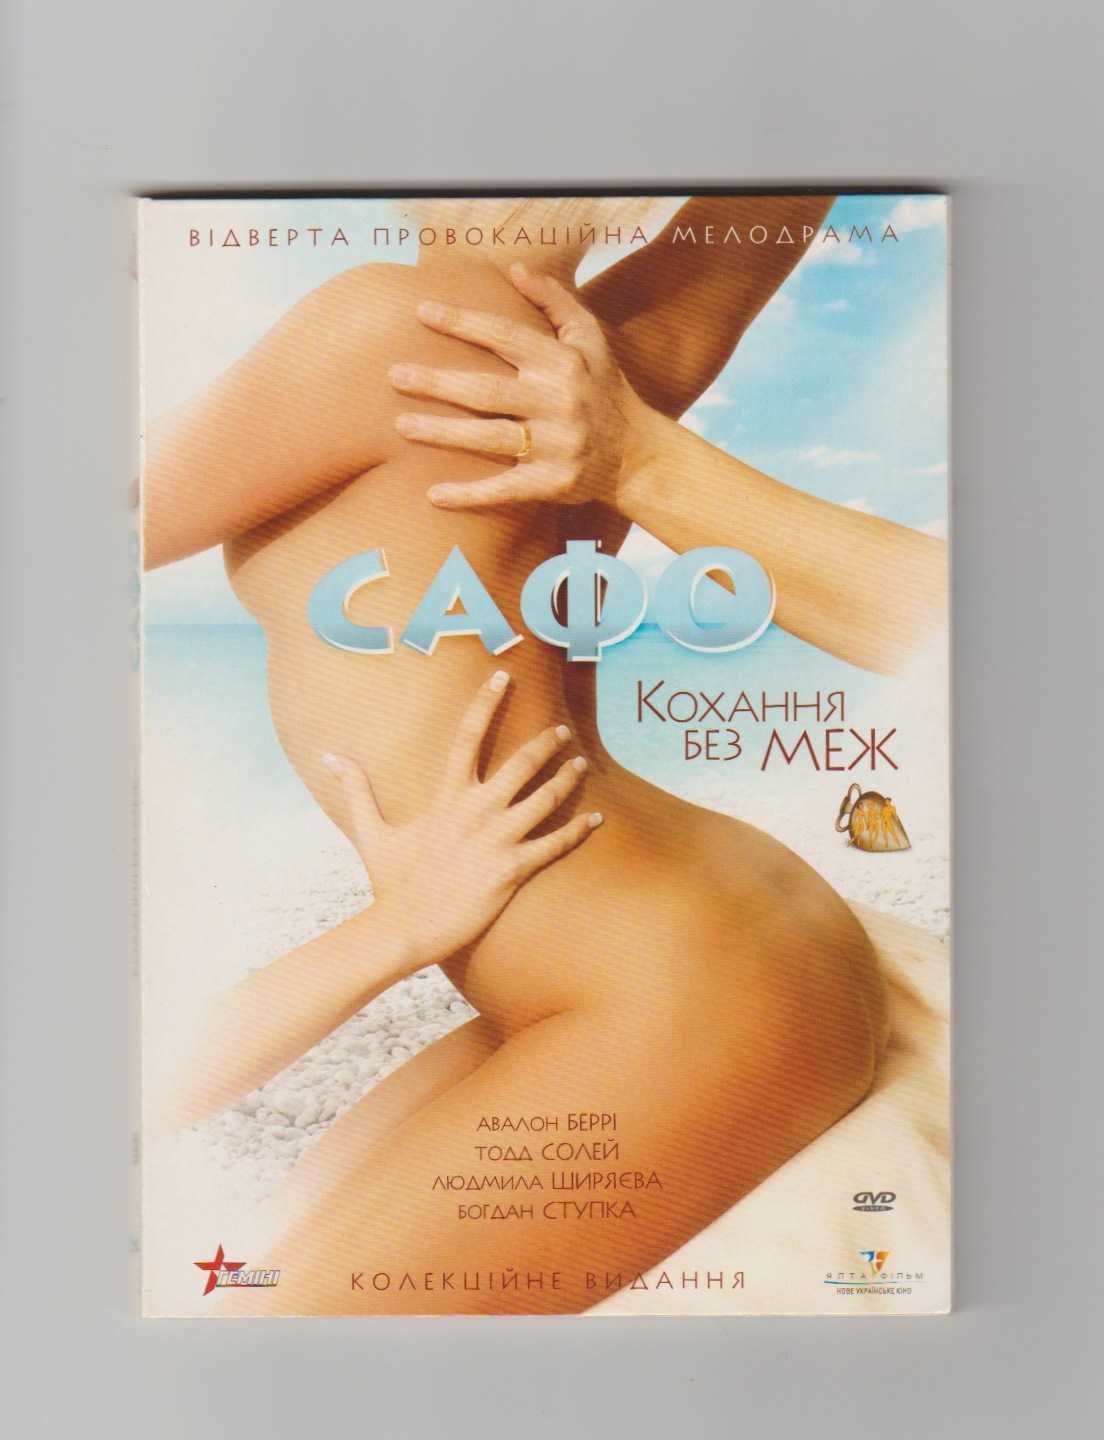 DVD фильм "Роковая Женщина" (лицензия)